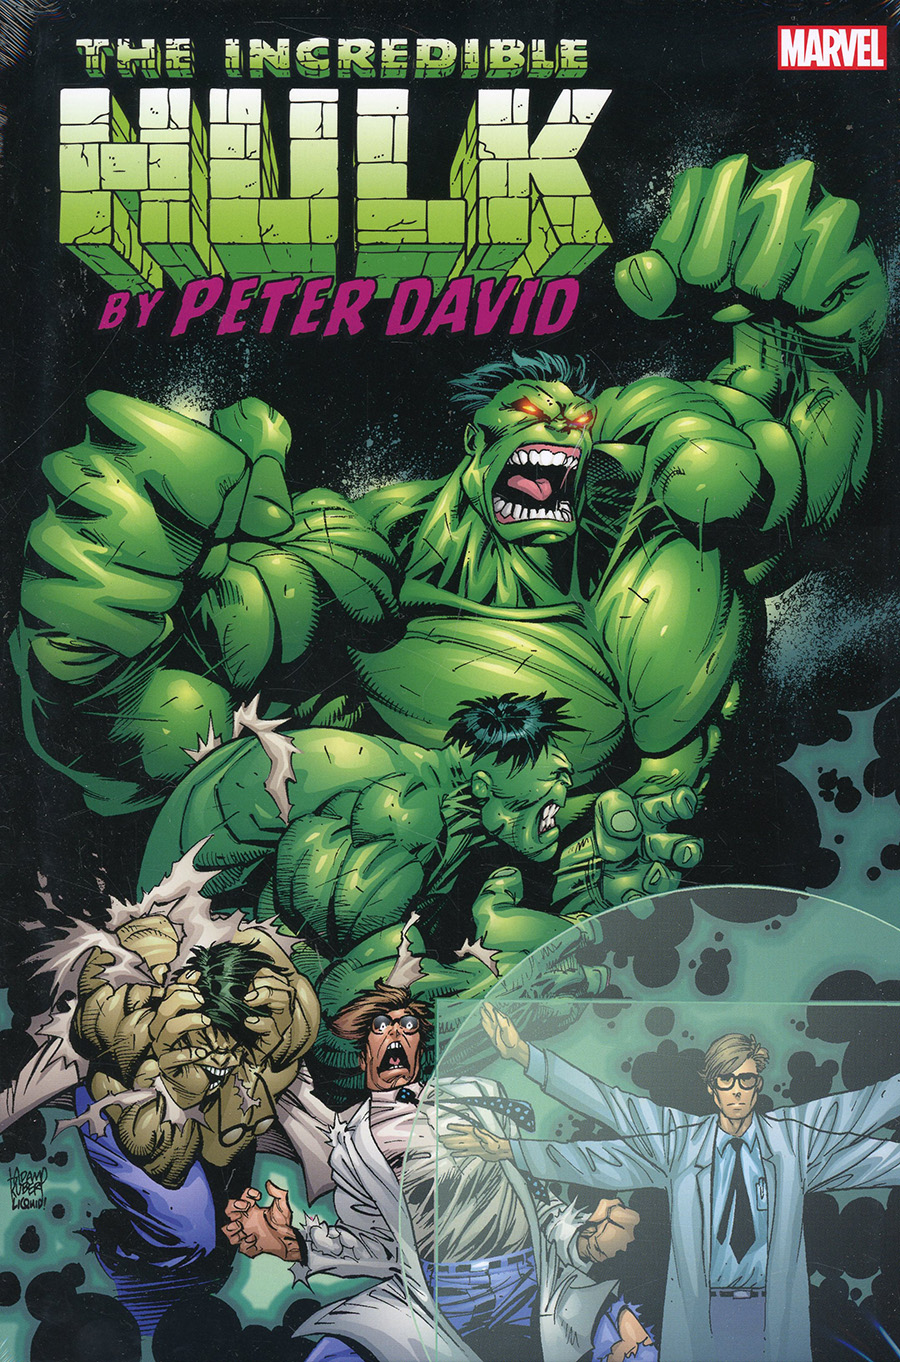 Incredible Hulk By Peter David Omnibus Vol 4 HC Direct Market Adam Kubert Variant Cover